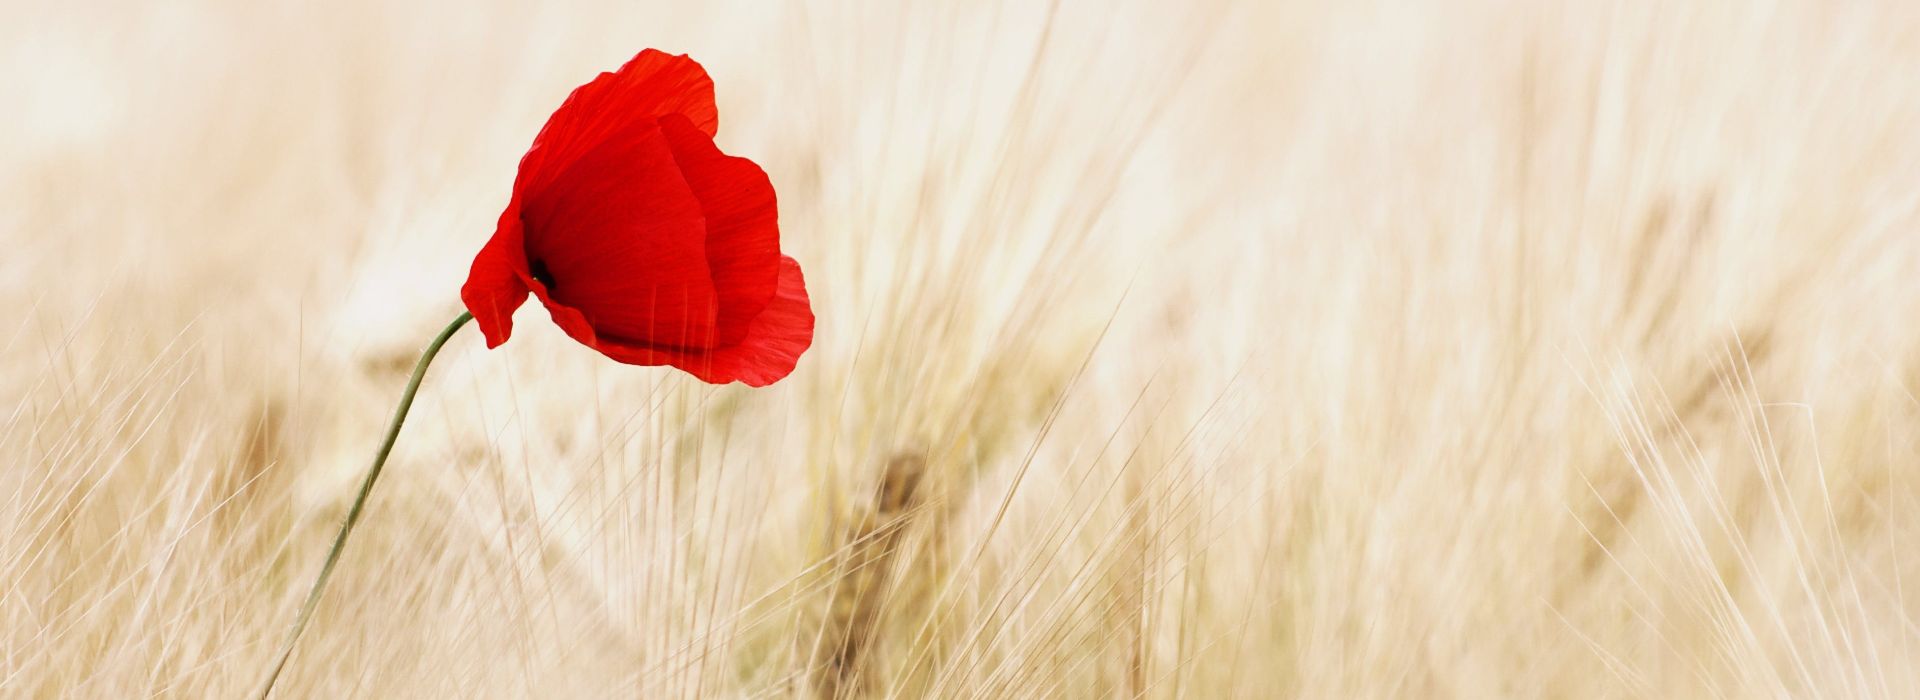 Single red poppy in a field